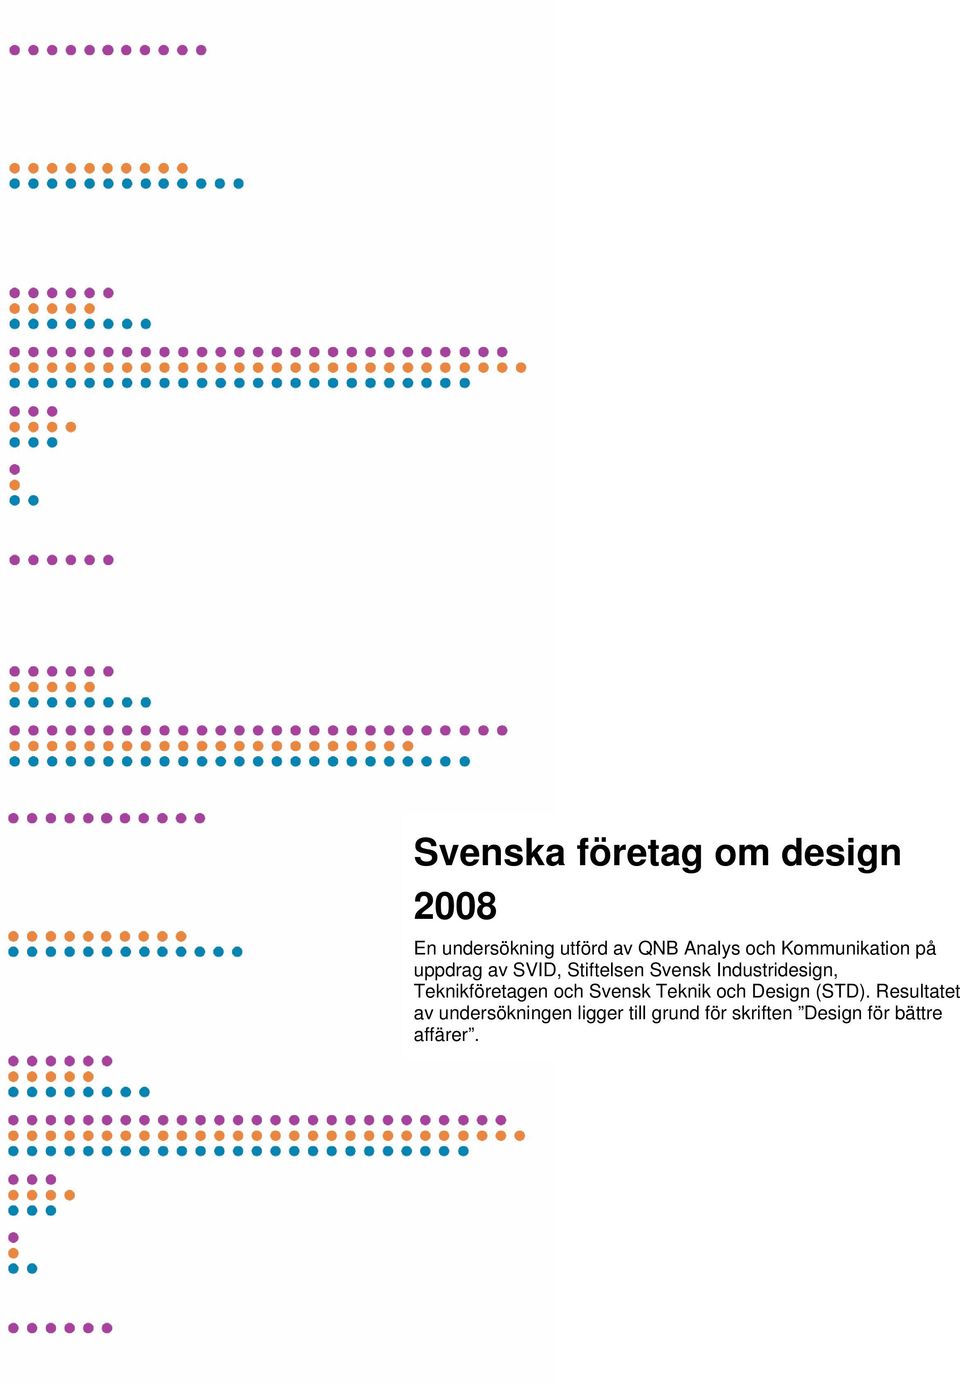 Industridesign, Teknikföretagen och Svensk Teknik och Design (STD).